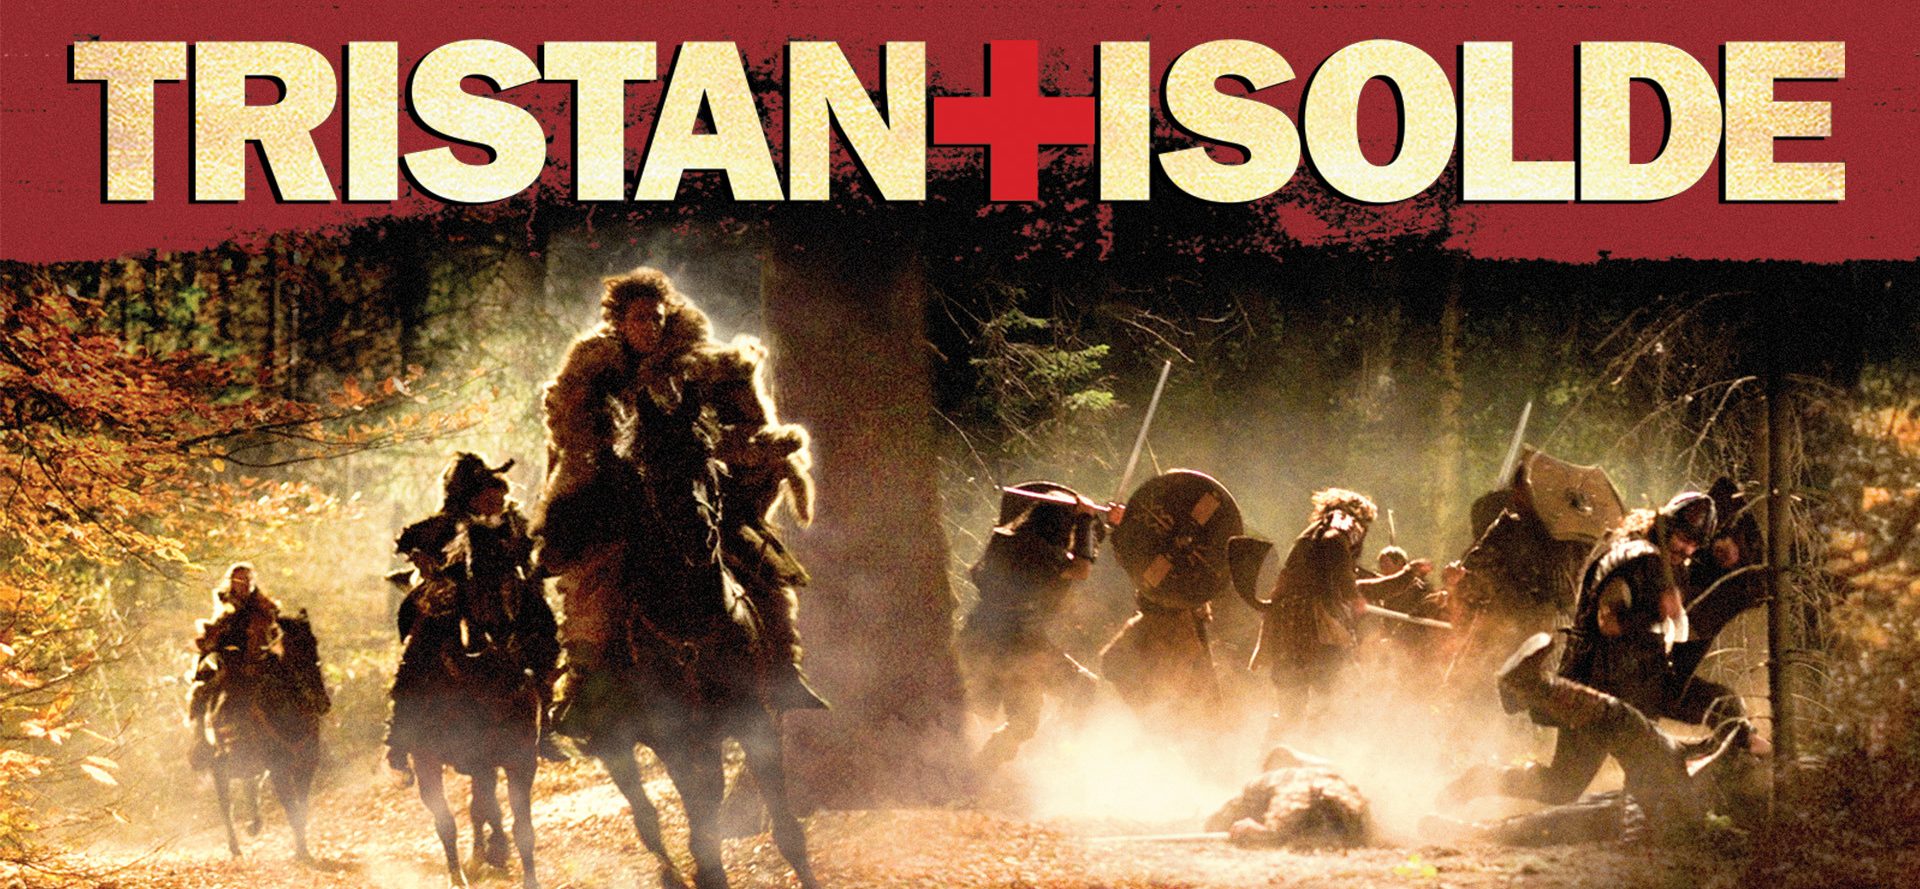 Retrouvez la légende de Tristan & Yseult sur grand écran…Produit par Ridley & Tony Scott